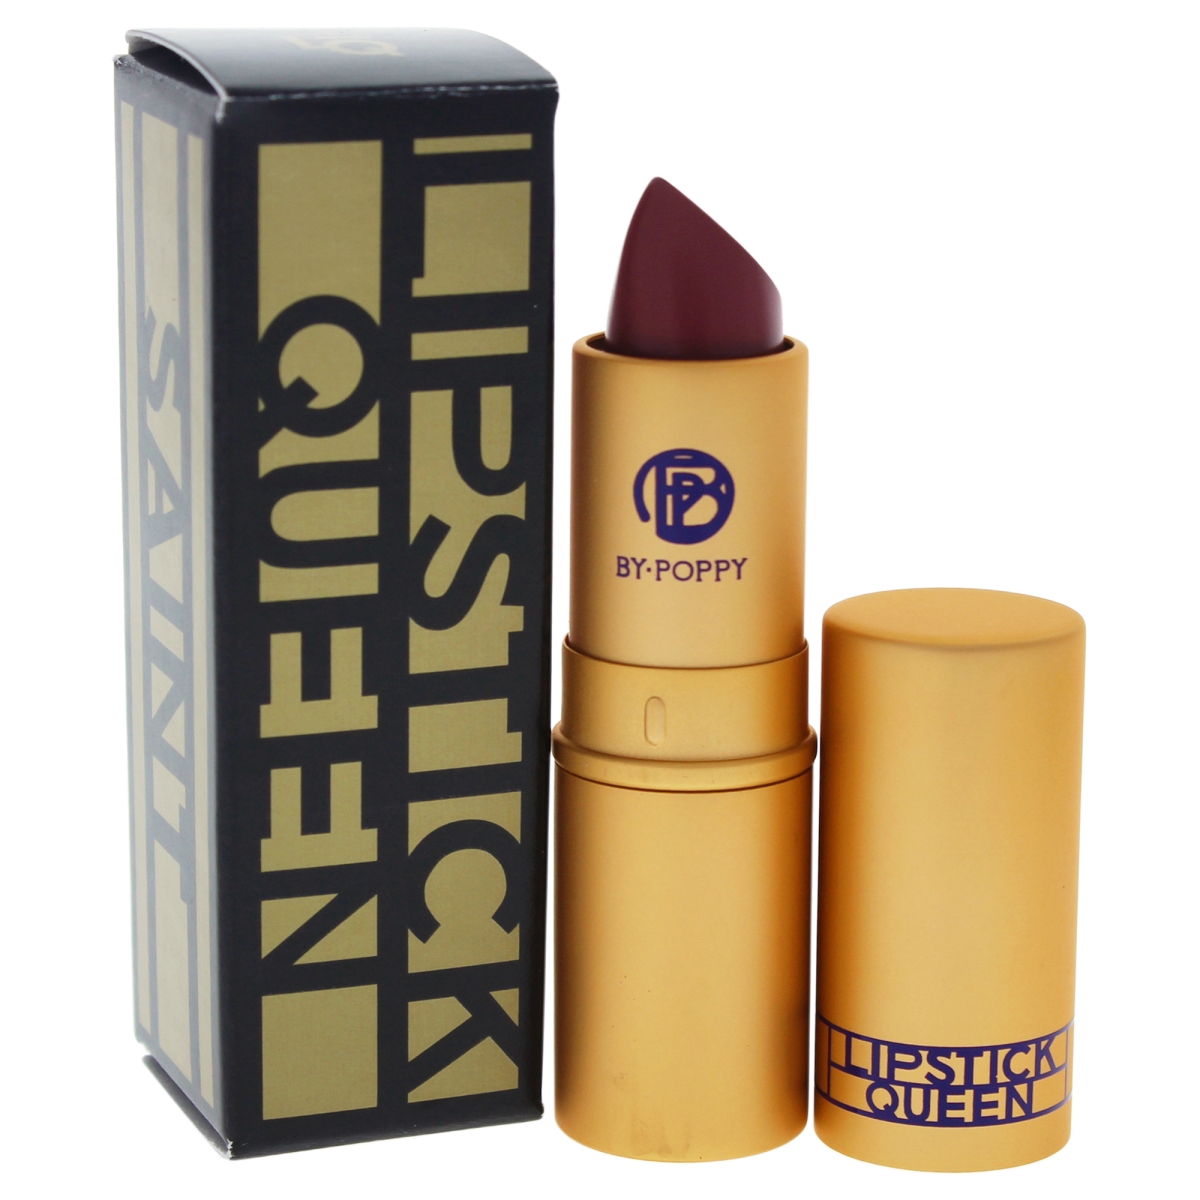 W-c-12741 0.12 Oz Saint Lipstick Mauve For Women